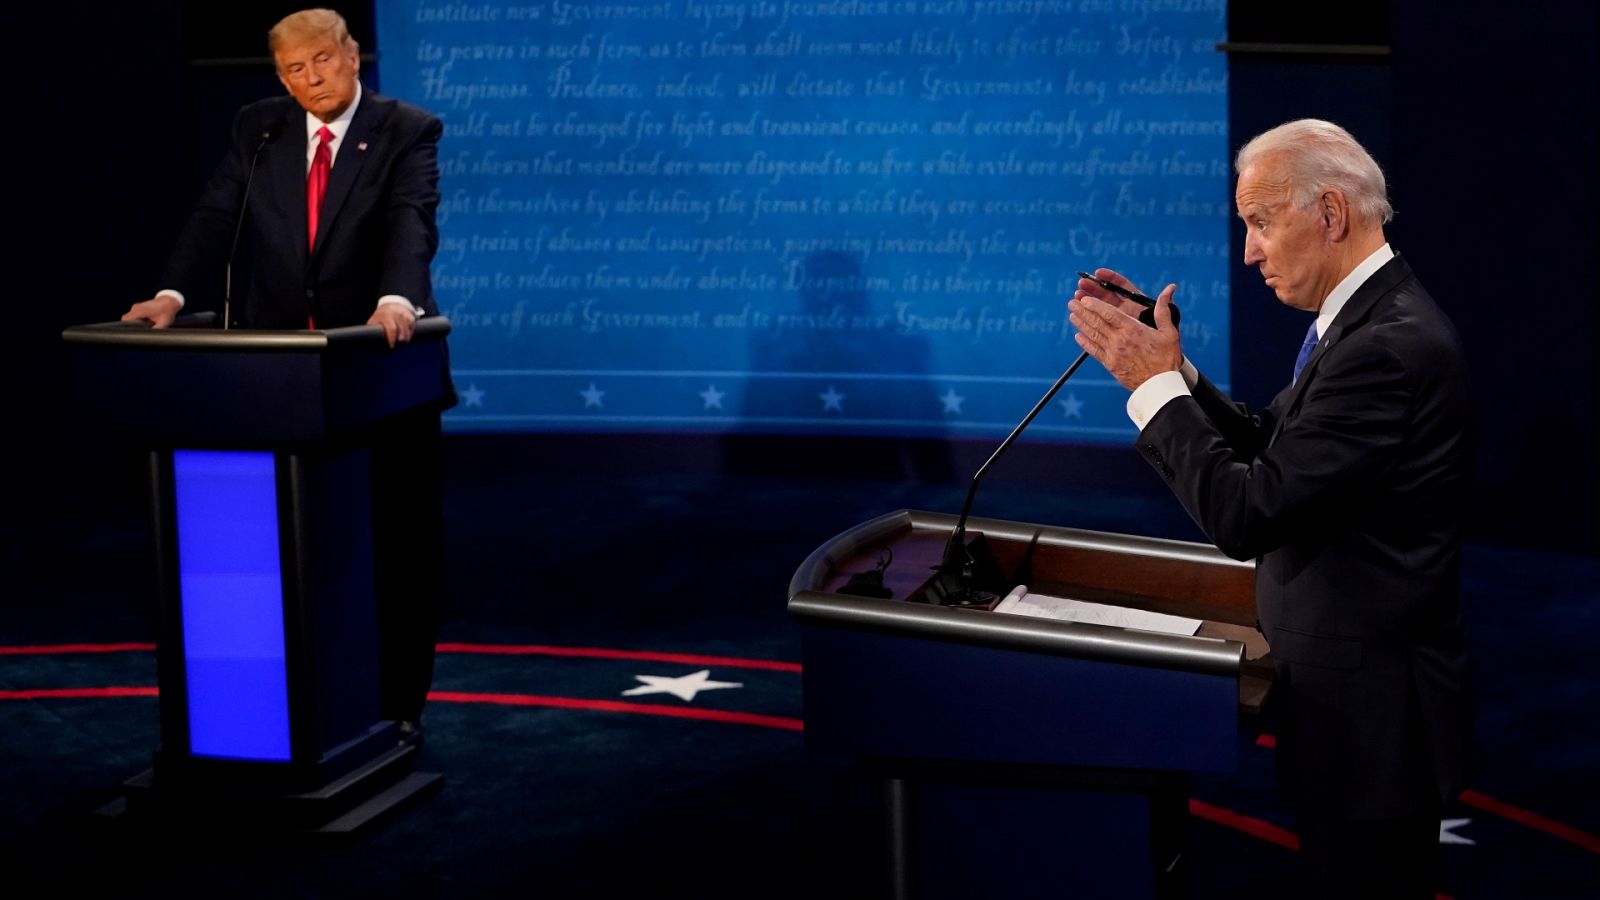 Especial informativo - Debate Presidencial EE.UU. entre Donald Trump y Joe Biden - RTVE.es